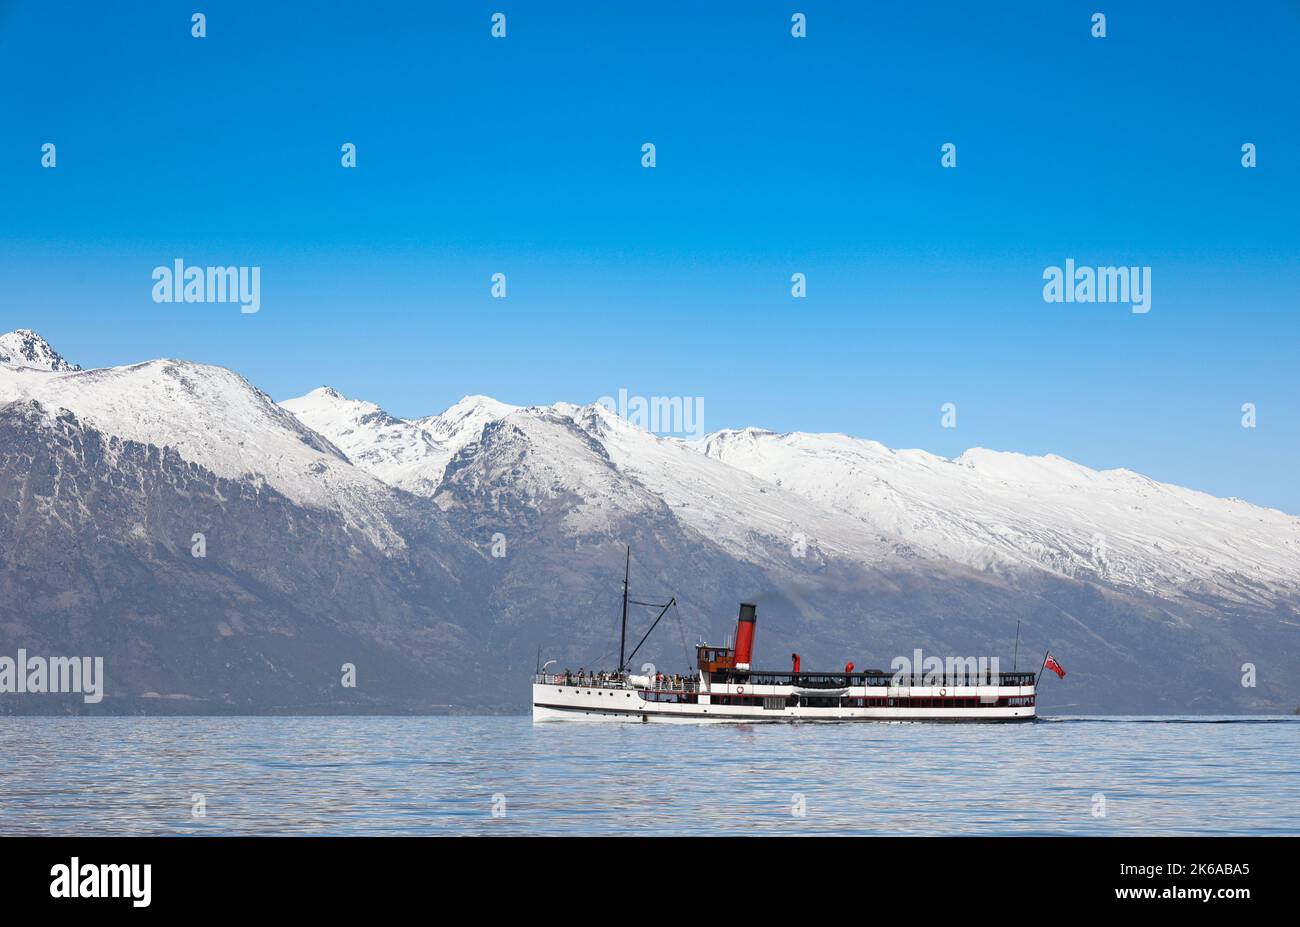 Lake Wakatipu, Queenstown, New Zealand. The vintage steamship the TSS Earnslaw sailing on Lake Wakatipu. Stock Photo